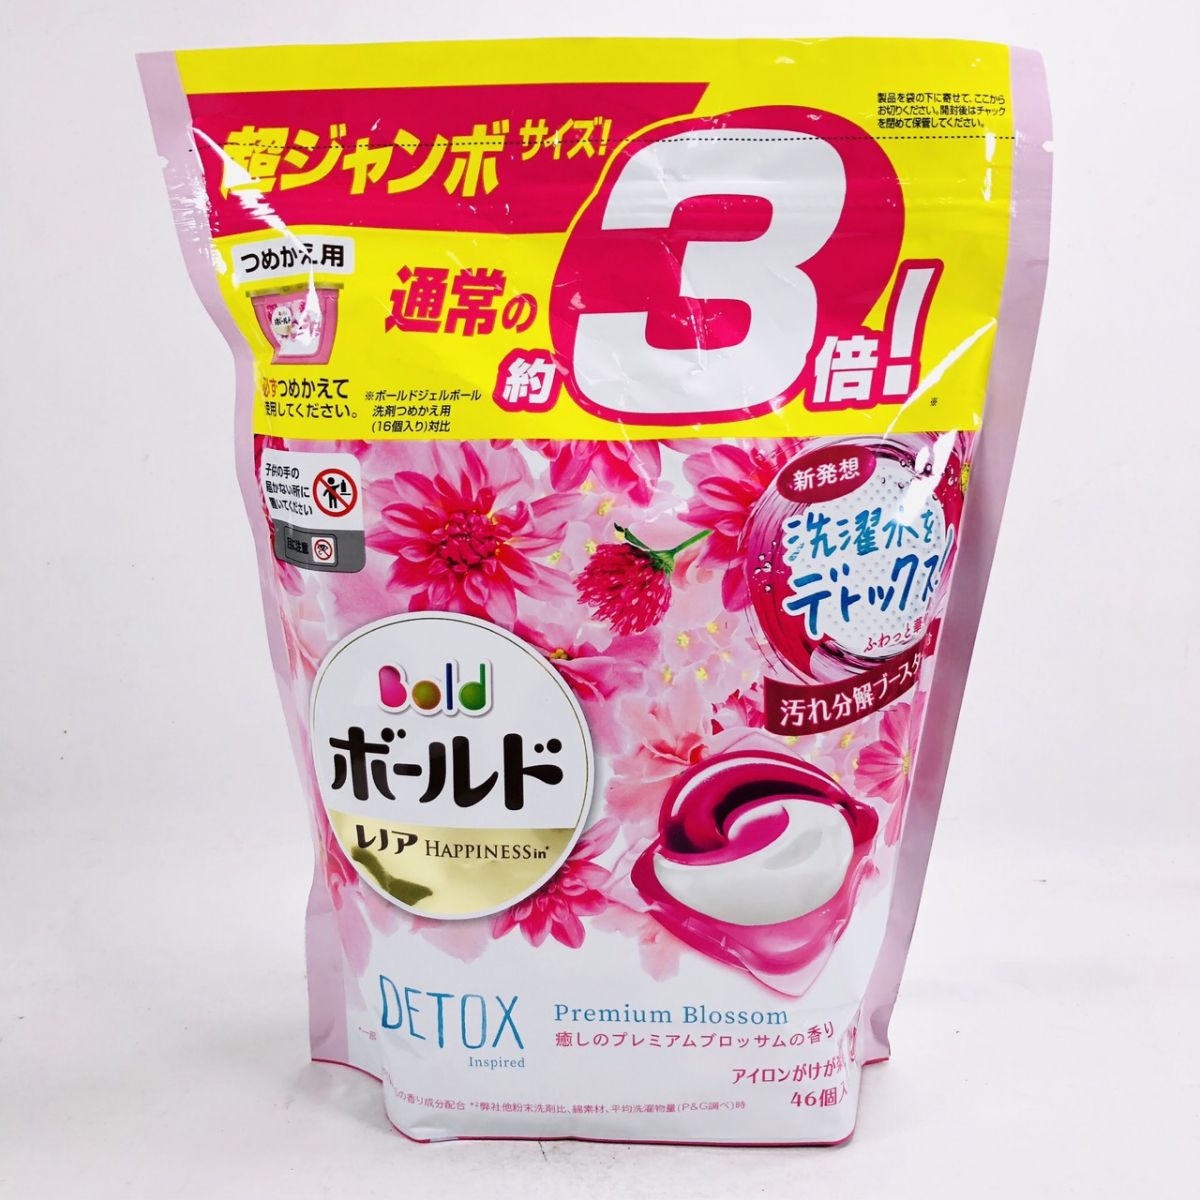 日本P&G BOLD 3D 洗衣膠囊 洗衣球 46入 (粉紅)